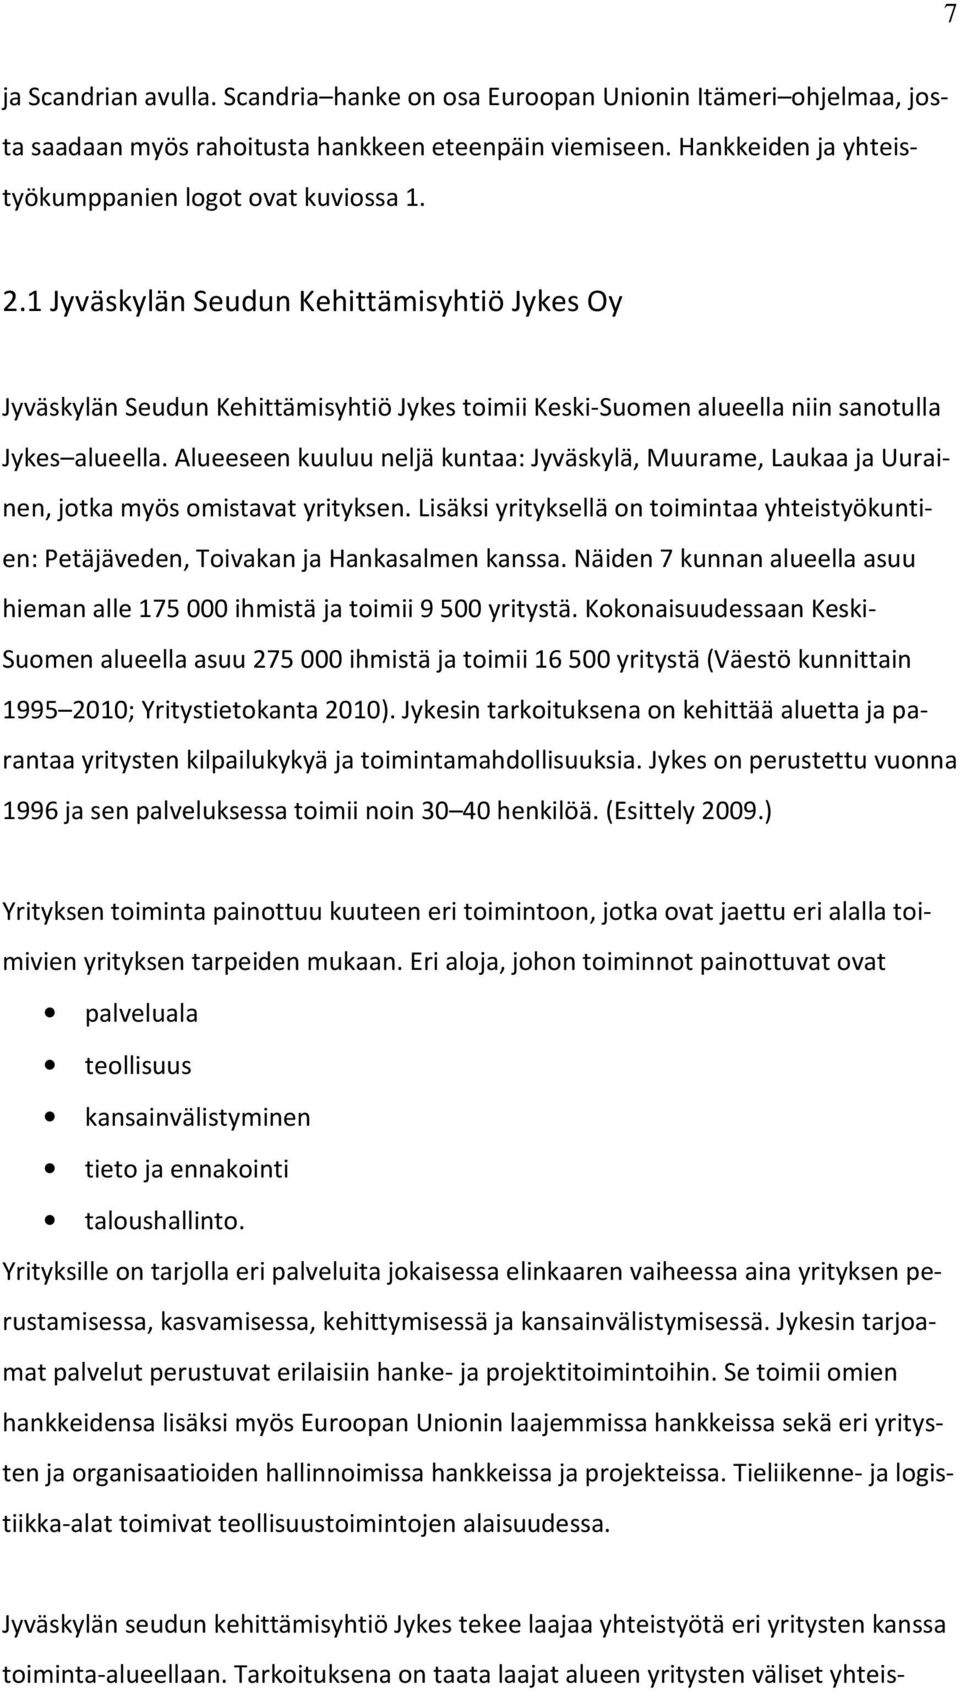 Alueeseen kuuluu neljä kuntaa: Jyväskylä, Muurame, Laukaa ja Uurainen, jotka myös omistavat yrityksen. Lisäksi yrityksellä on toimintaa yhteistyökuntien: Petäjäveden, Toivakan ja Hankasalmen kanssa.